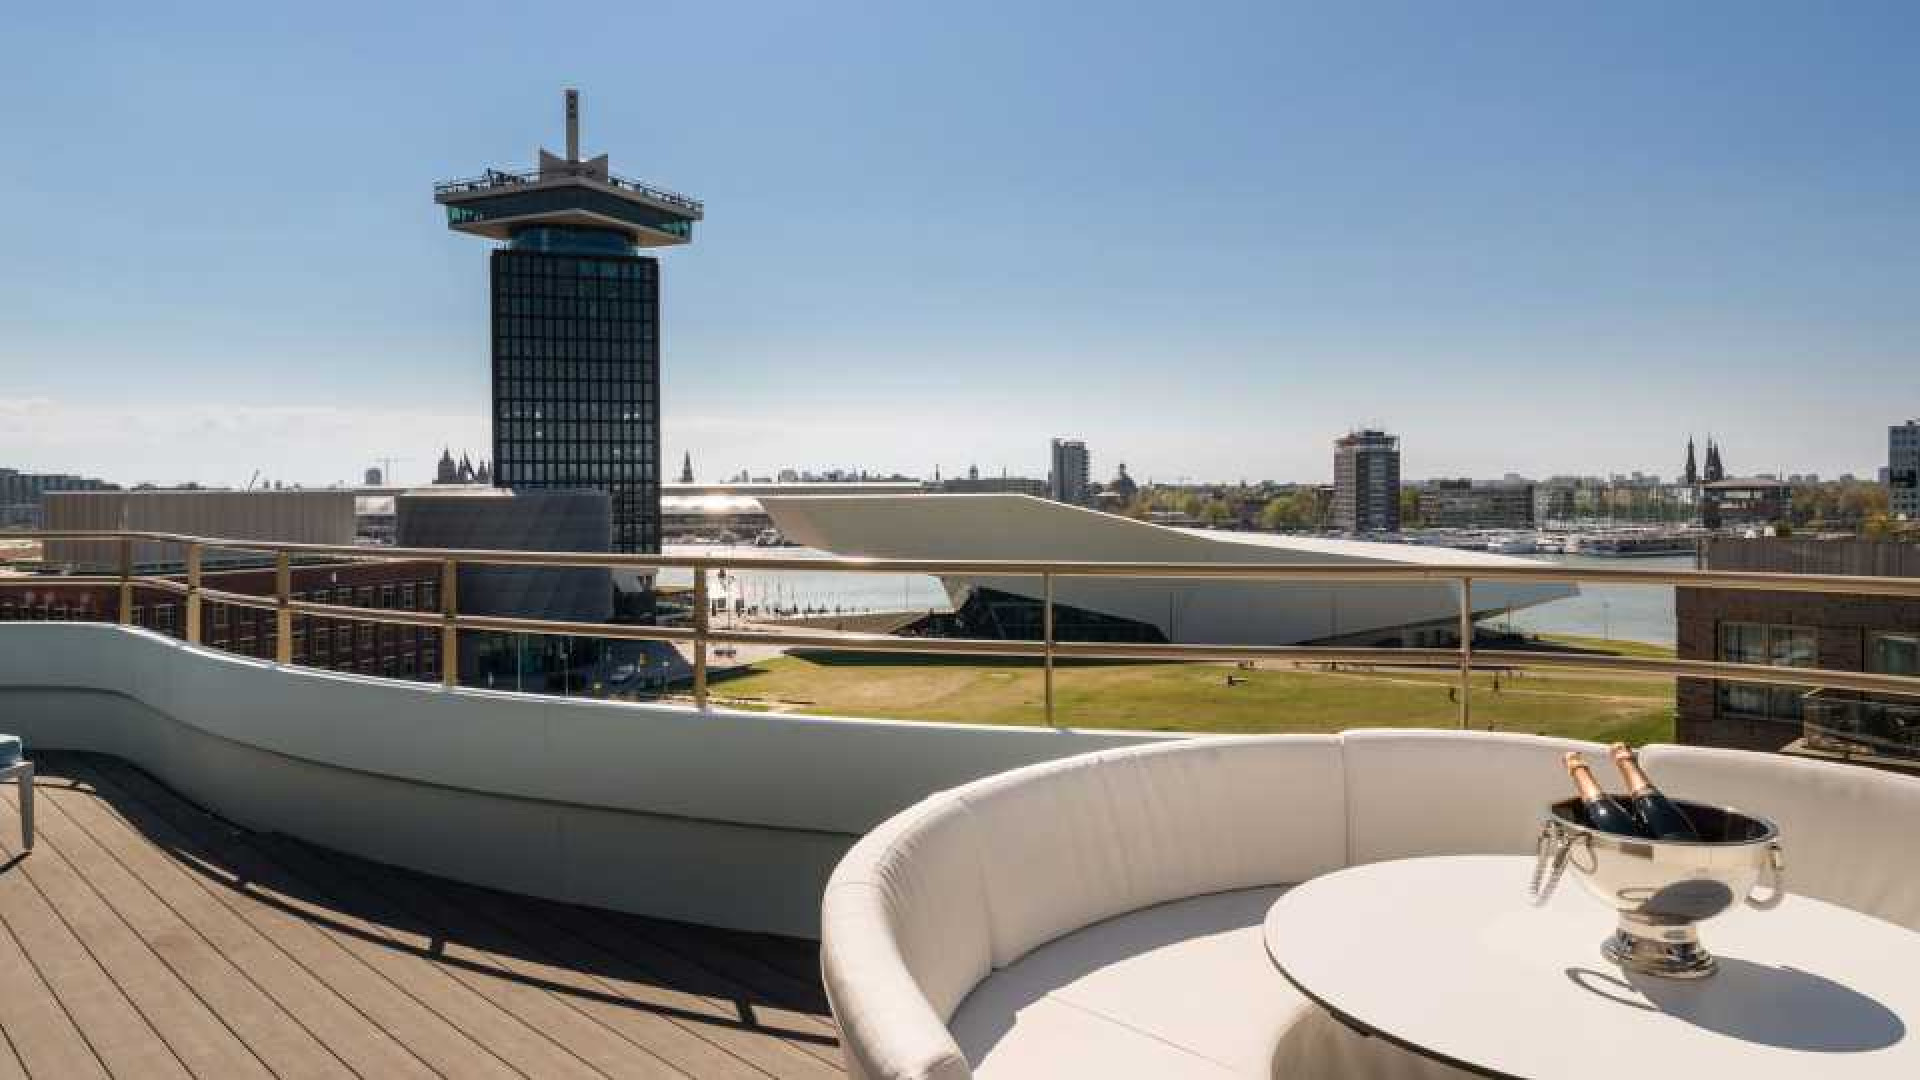 Gordon zet zijn penthouse in Amsterdam tegen mega prijs te huur. Zie foto's